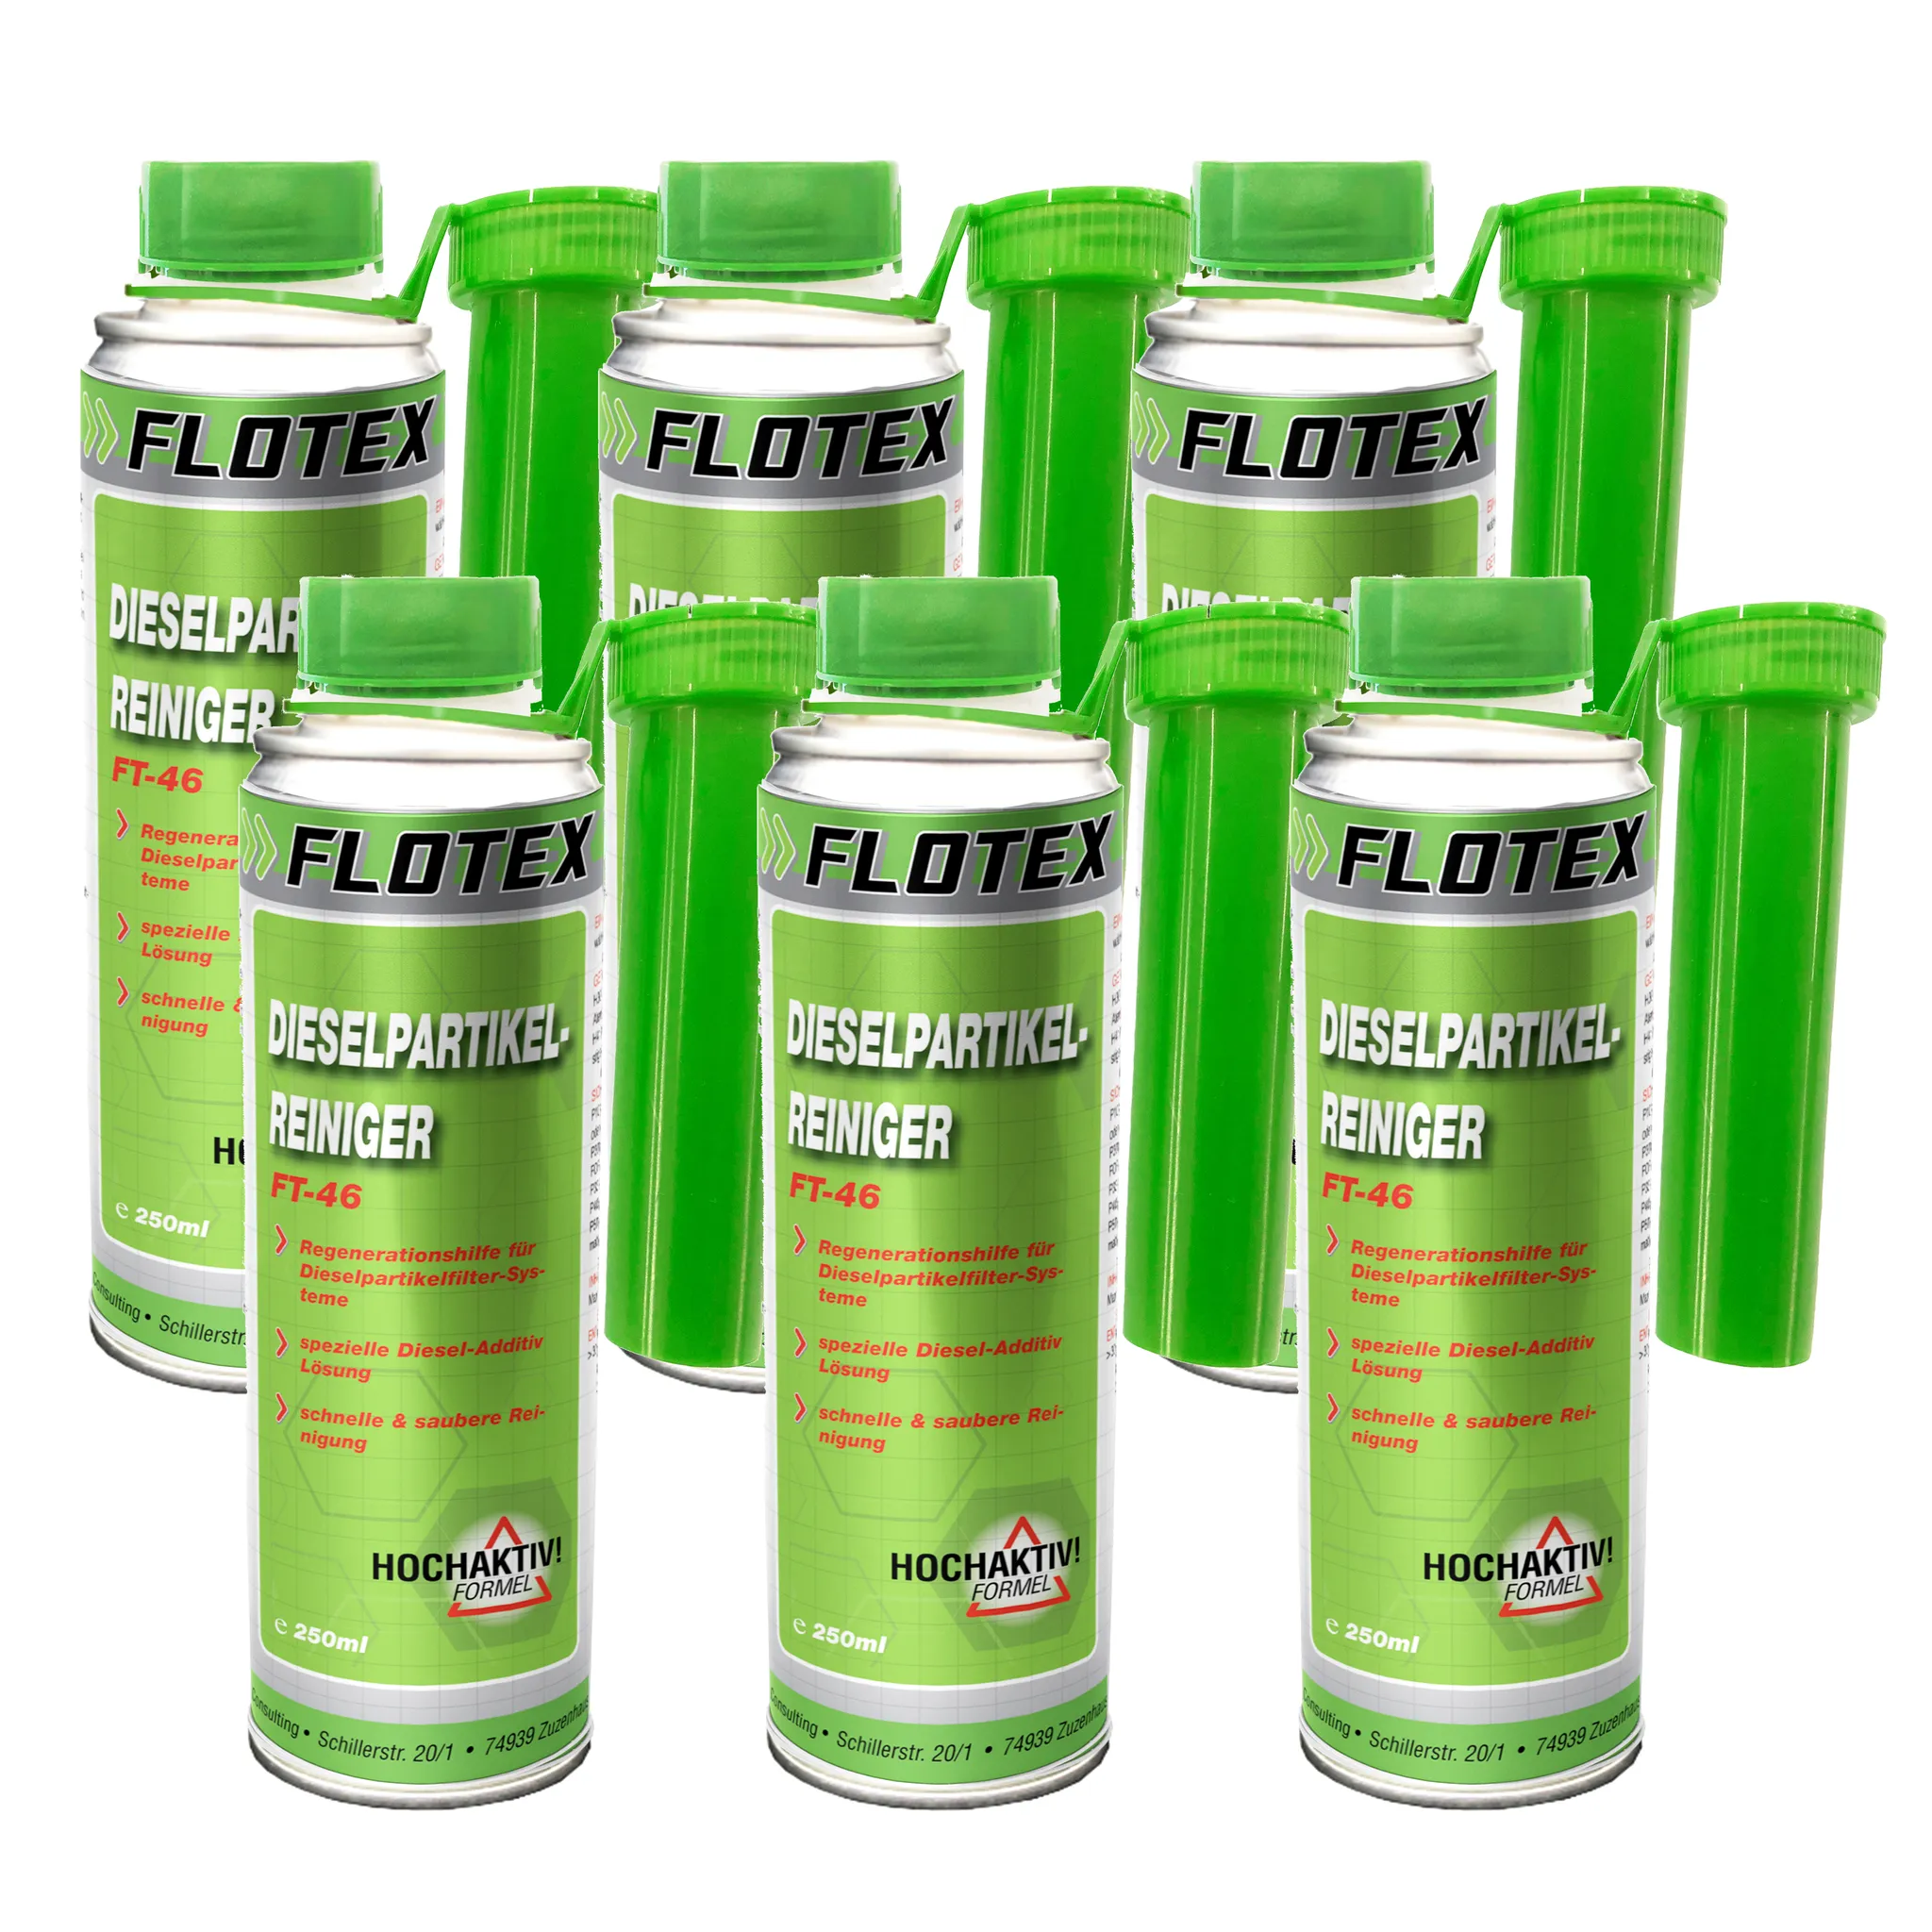 Flotex Diesel Partiklefilter Reiniger, 6 x 250ml Additiv DPF